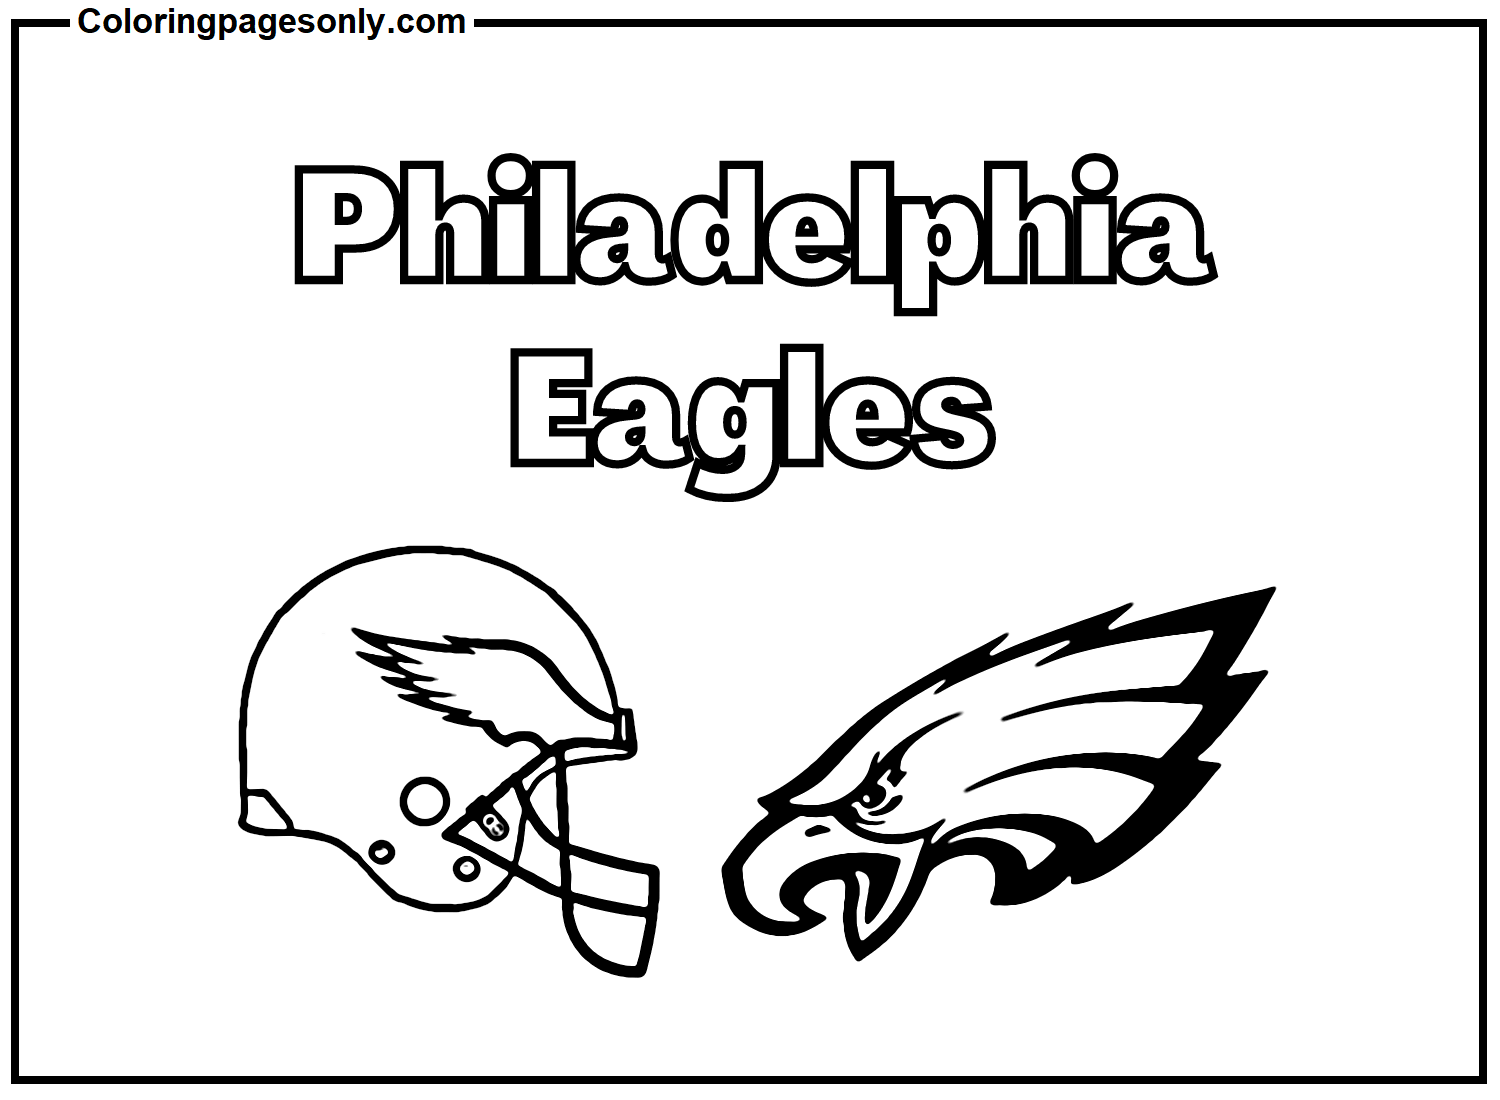 Équipe des Eagles de Philadelphie des Eagles de Philadelphie